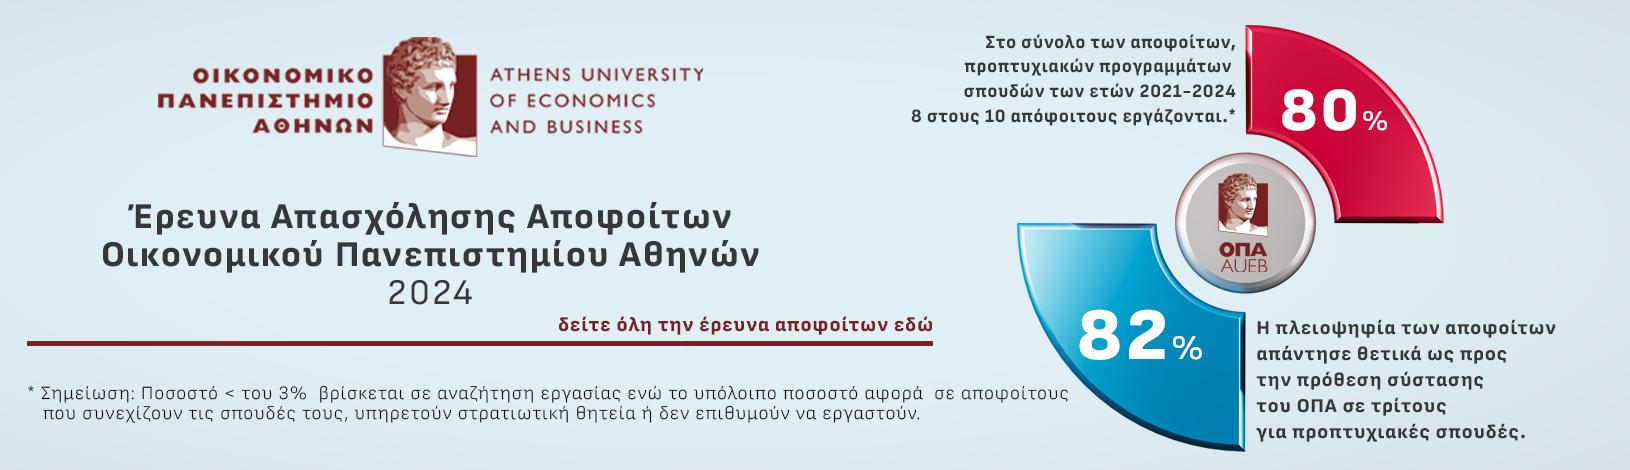 Έρευνα Απασχόλησης Αποφοίτων Οικονομικού Πανεπιστημίου Αθηνών 2024